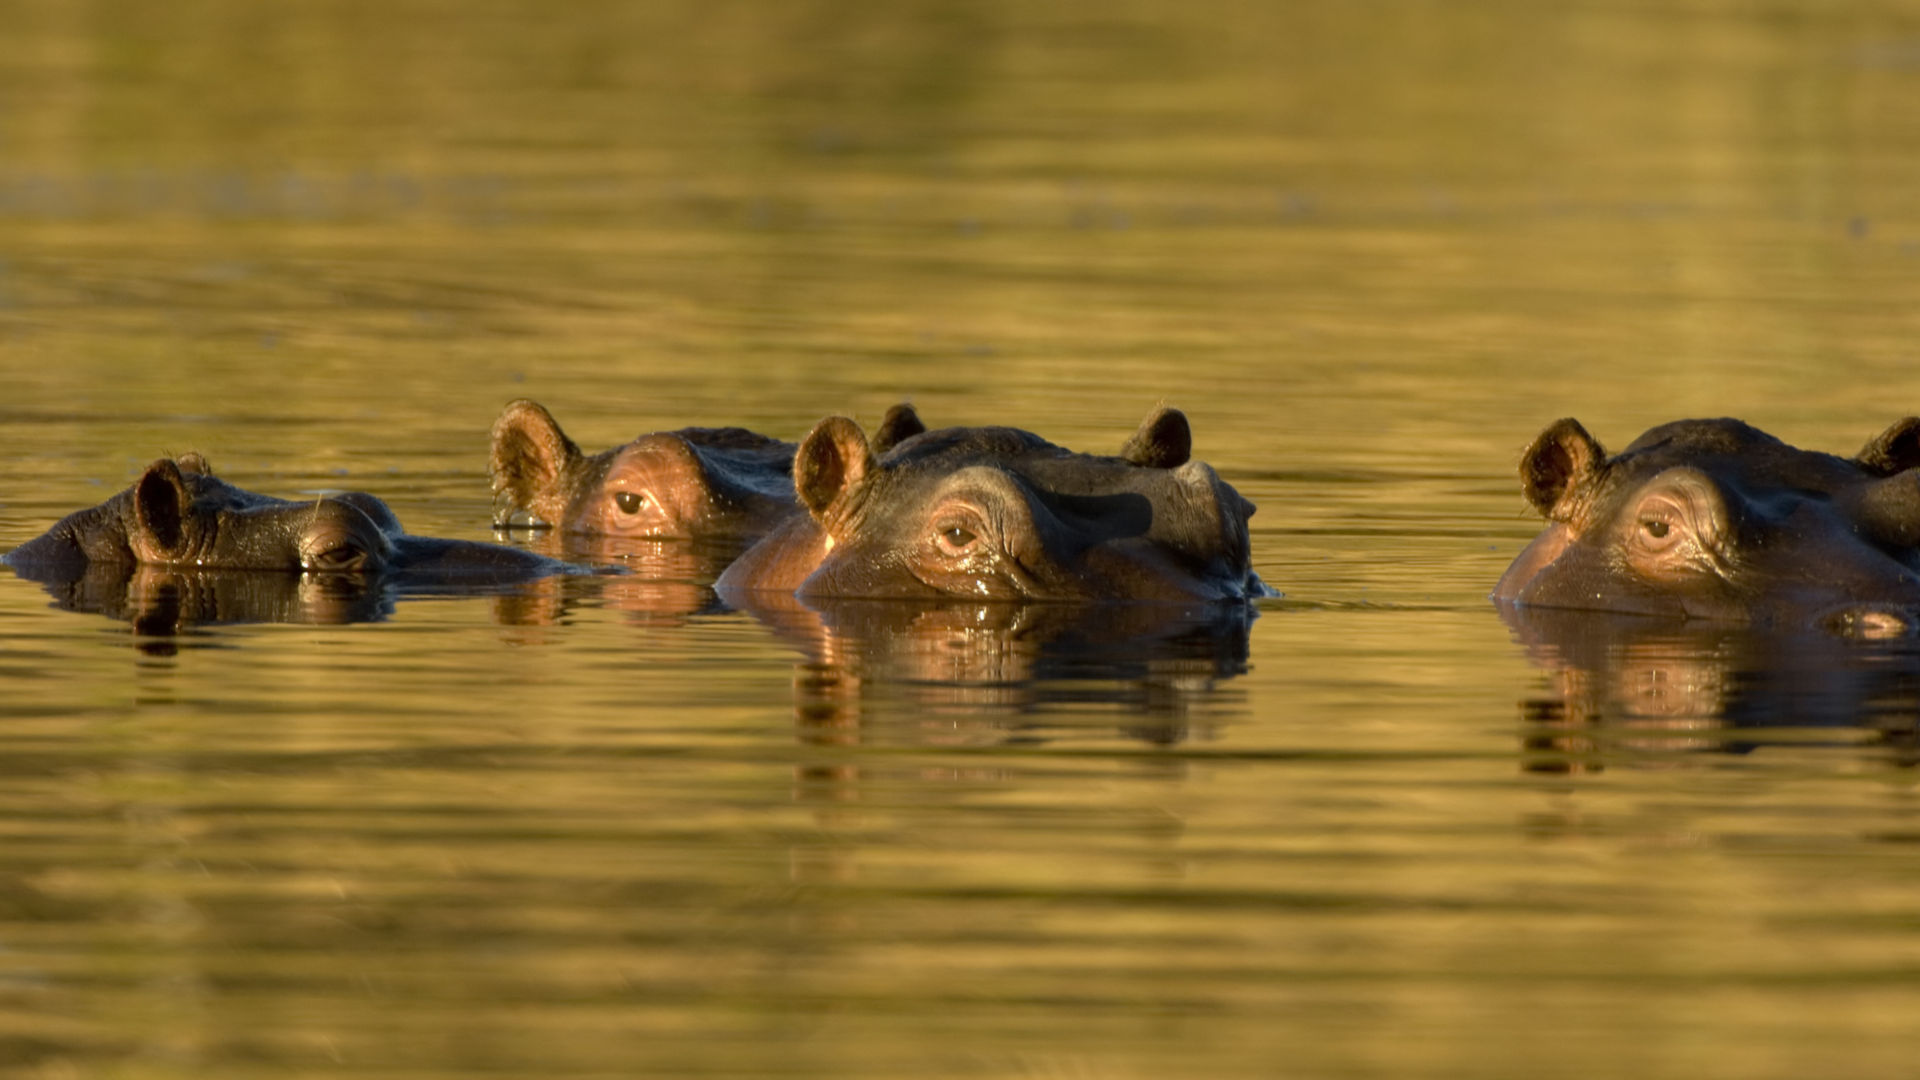 Custom Travel Planner Network - South Africa-2-Hippos at Sabi Sands-Kruger National Park